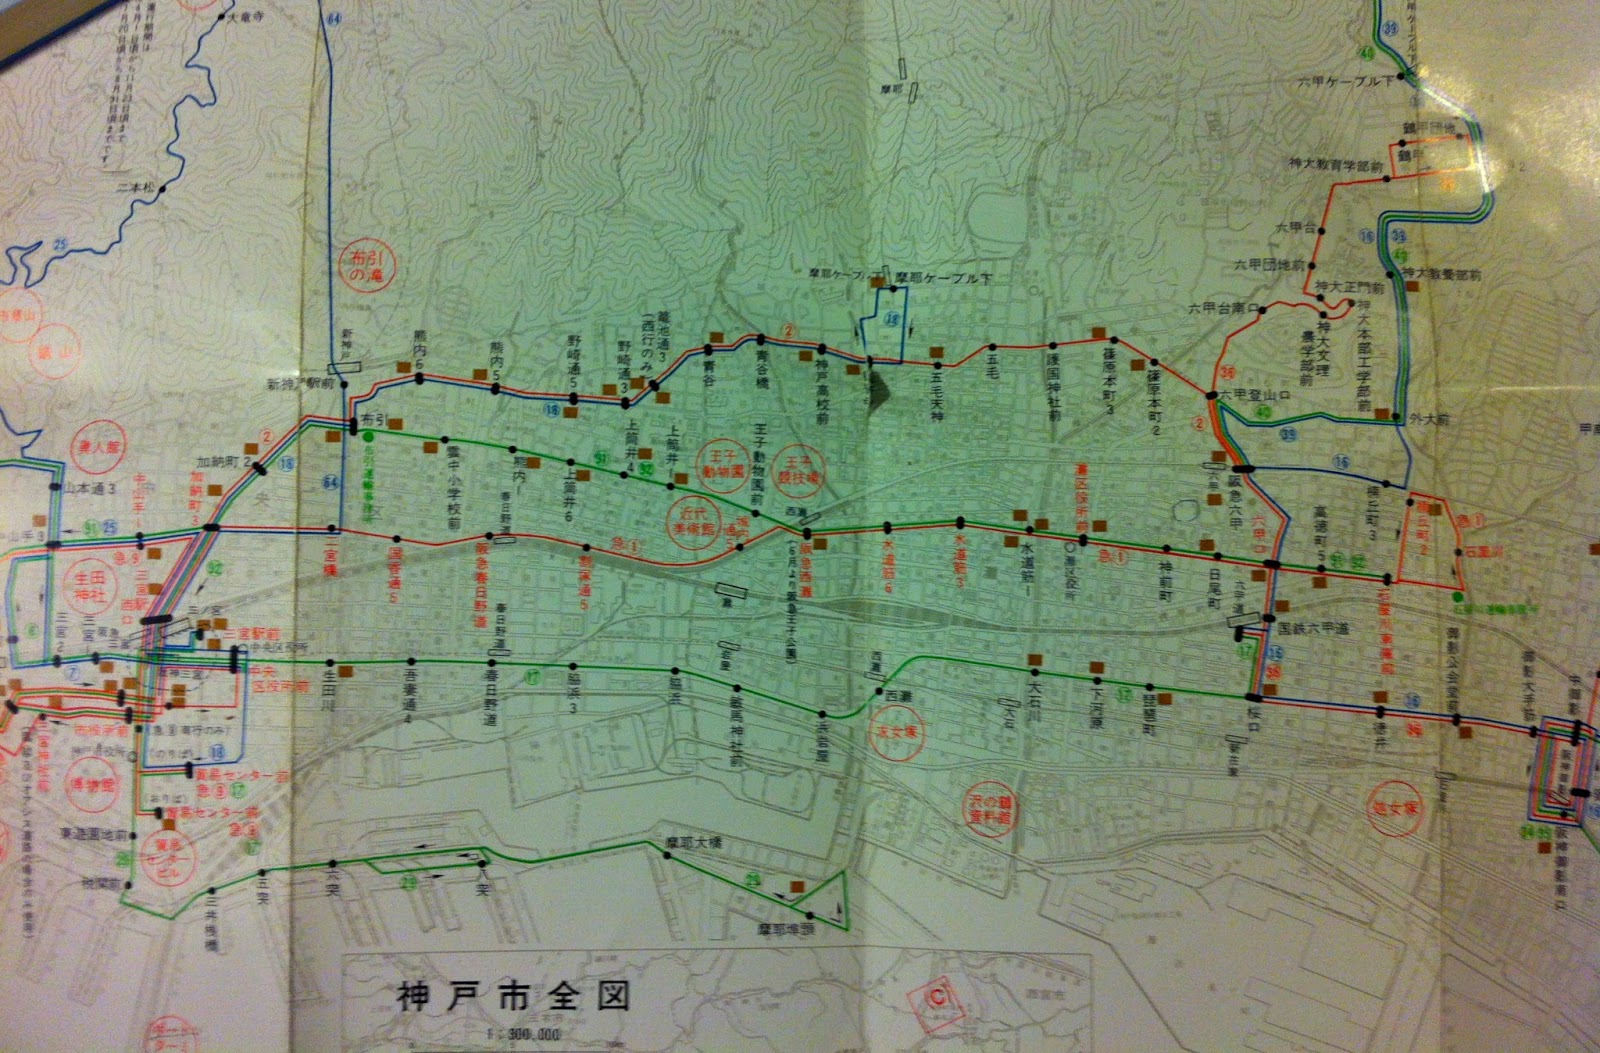 神戸 市バス 5 系統 路線 図 Kadamsvki S Diary